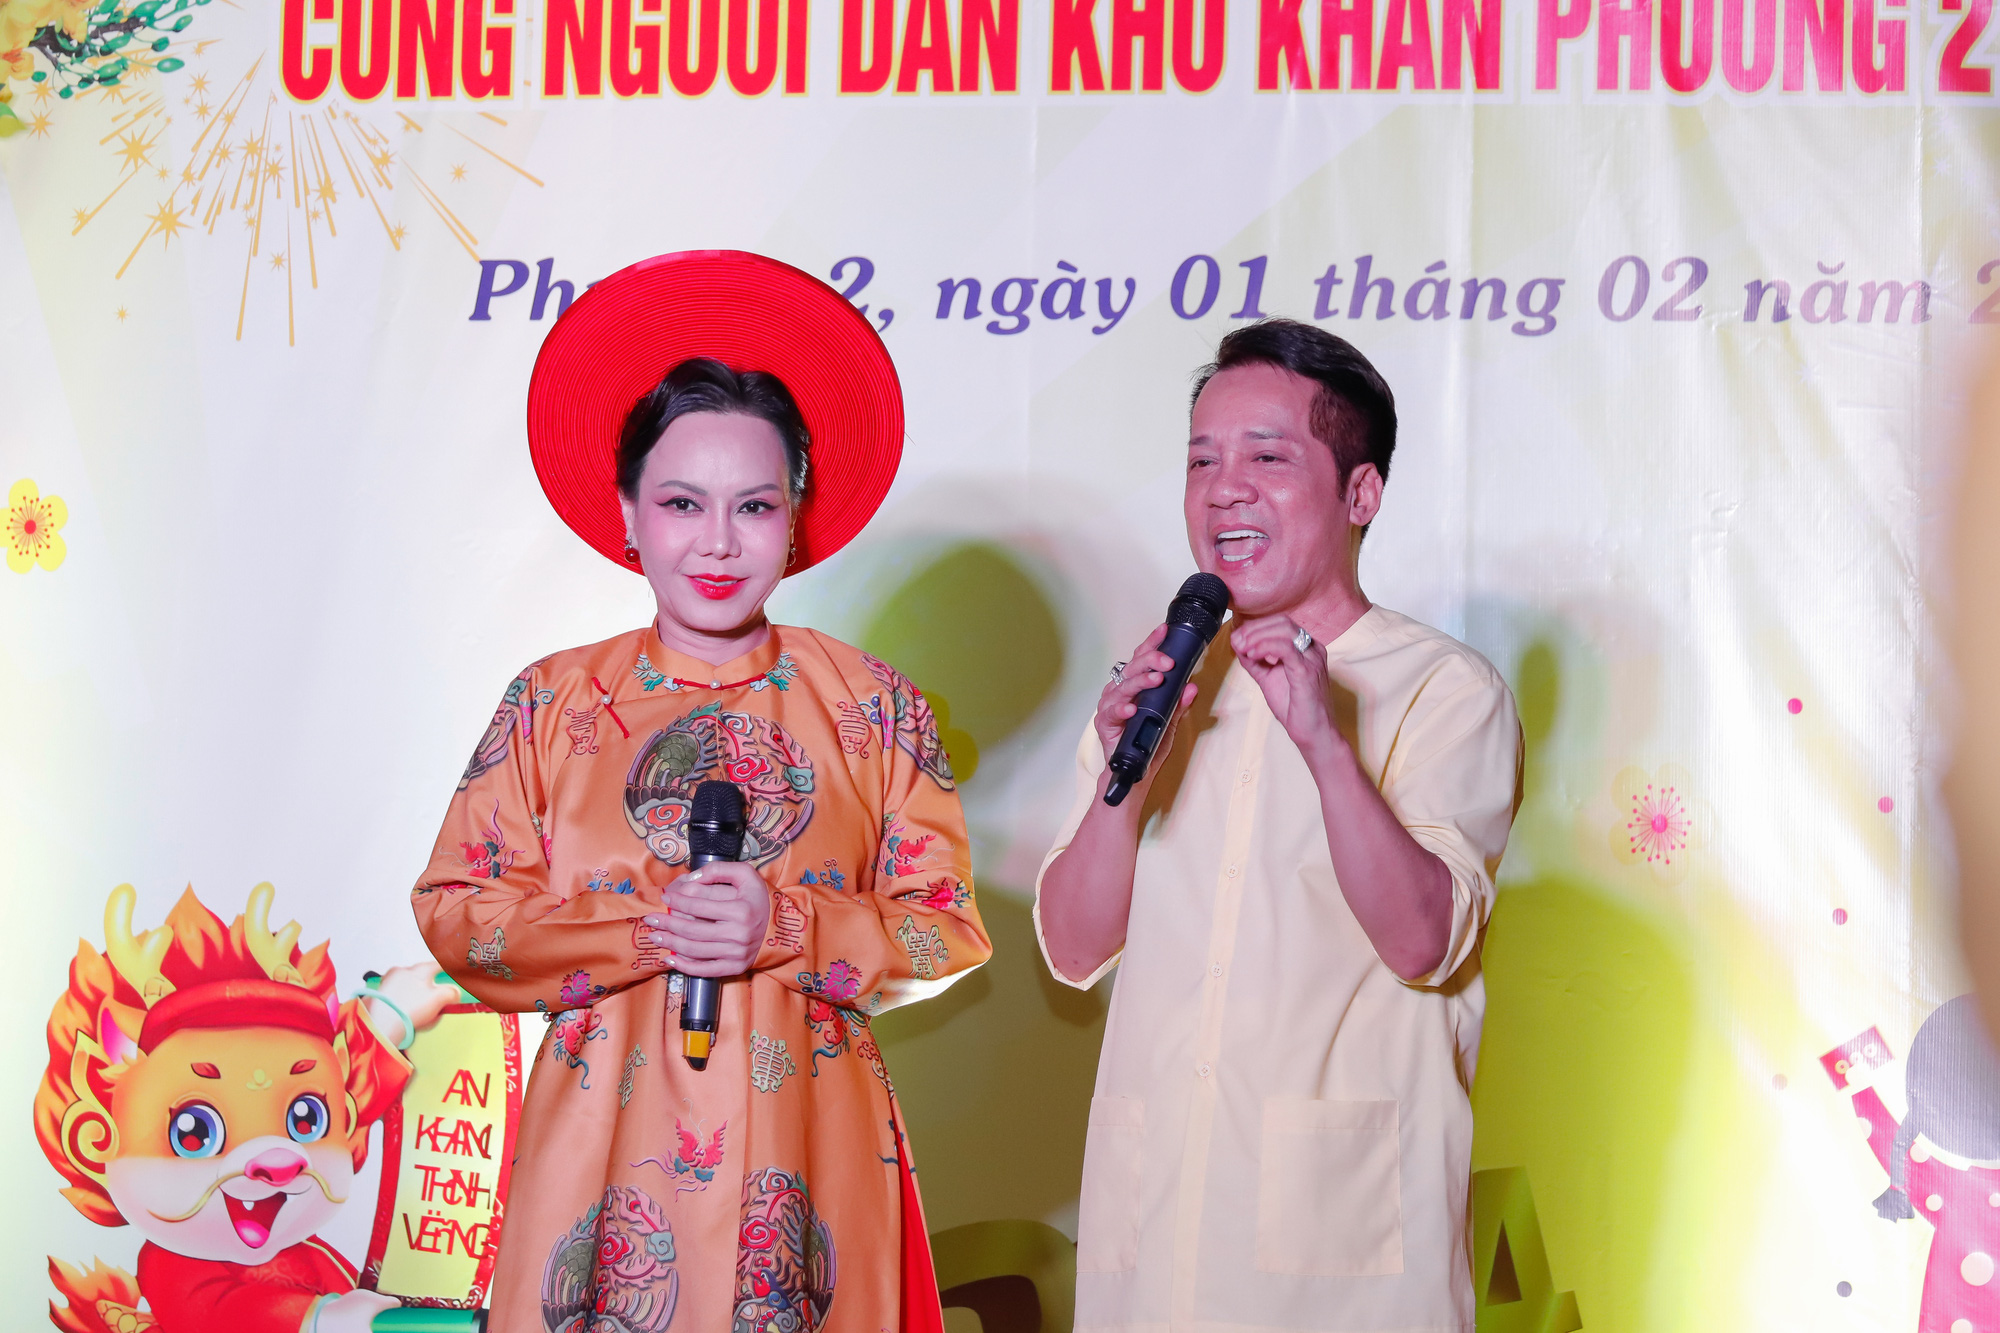 Nghệ sĩ Việt Hương mang đến tiếng cười cho người có hoàn cảnh khó khăn dịp cuối năm - Ảnh: BTC